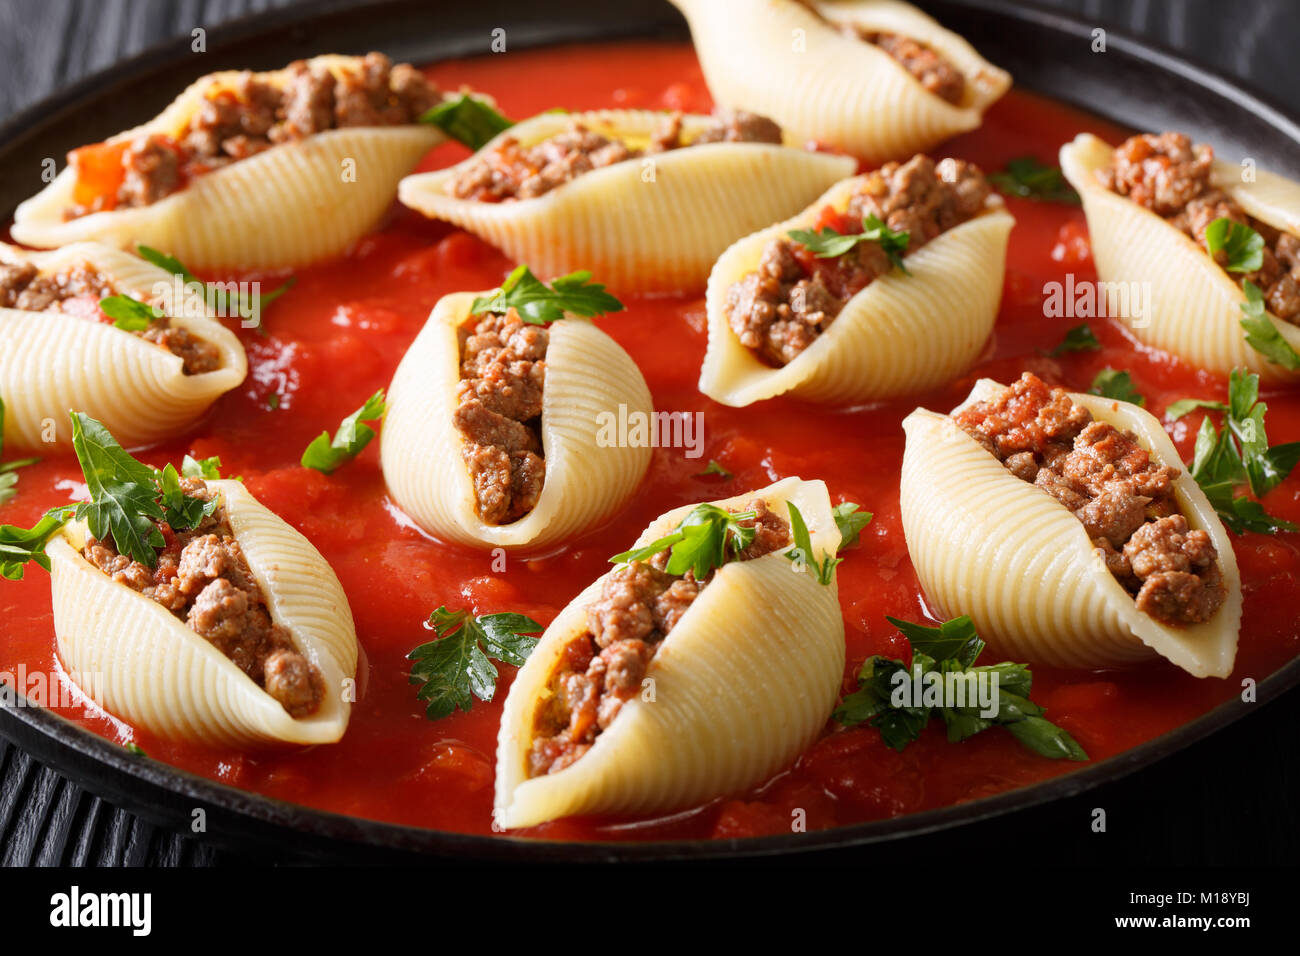 Guscio di pasta conchiglioni farcite con carne di manzo con salsa marinara close-up sulla piastra sulla tavola orizzontale. Foto Stock